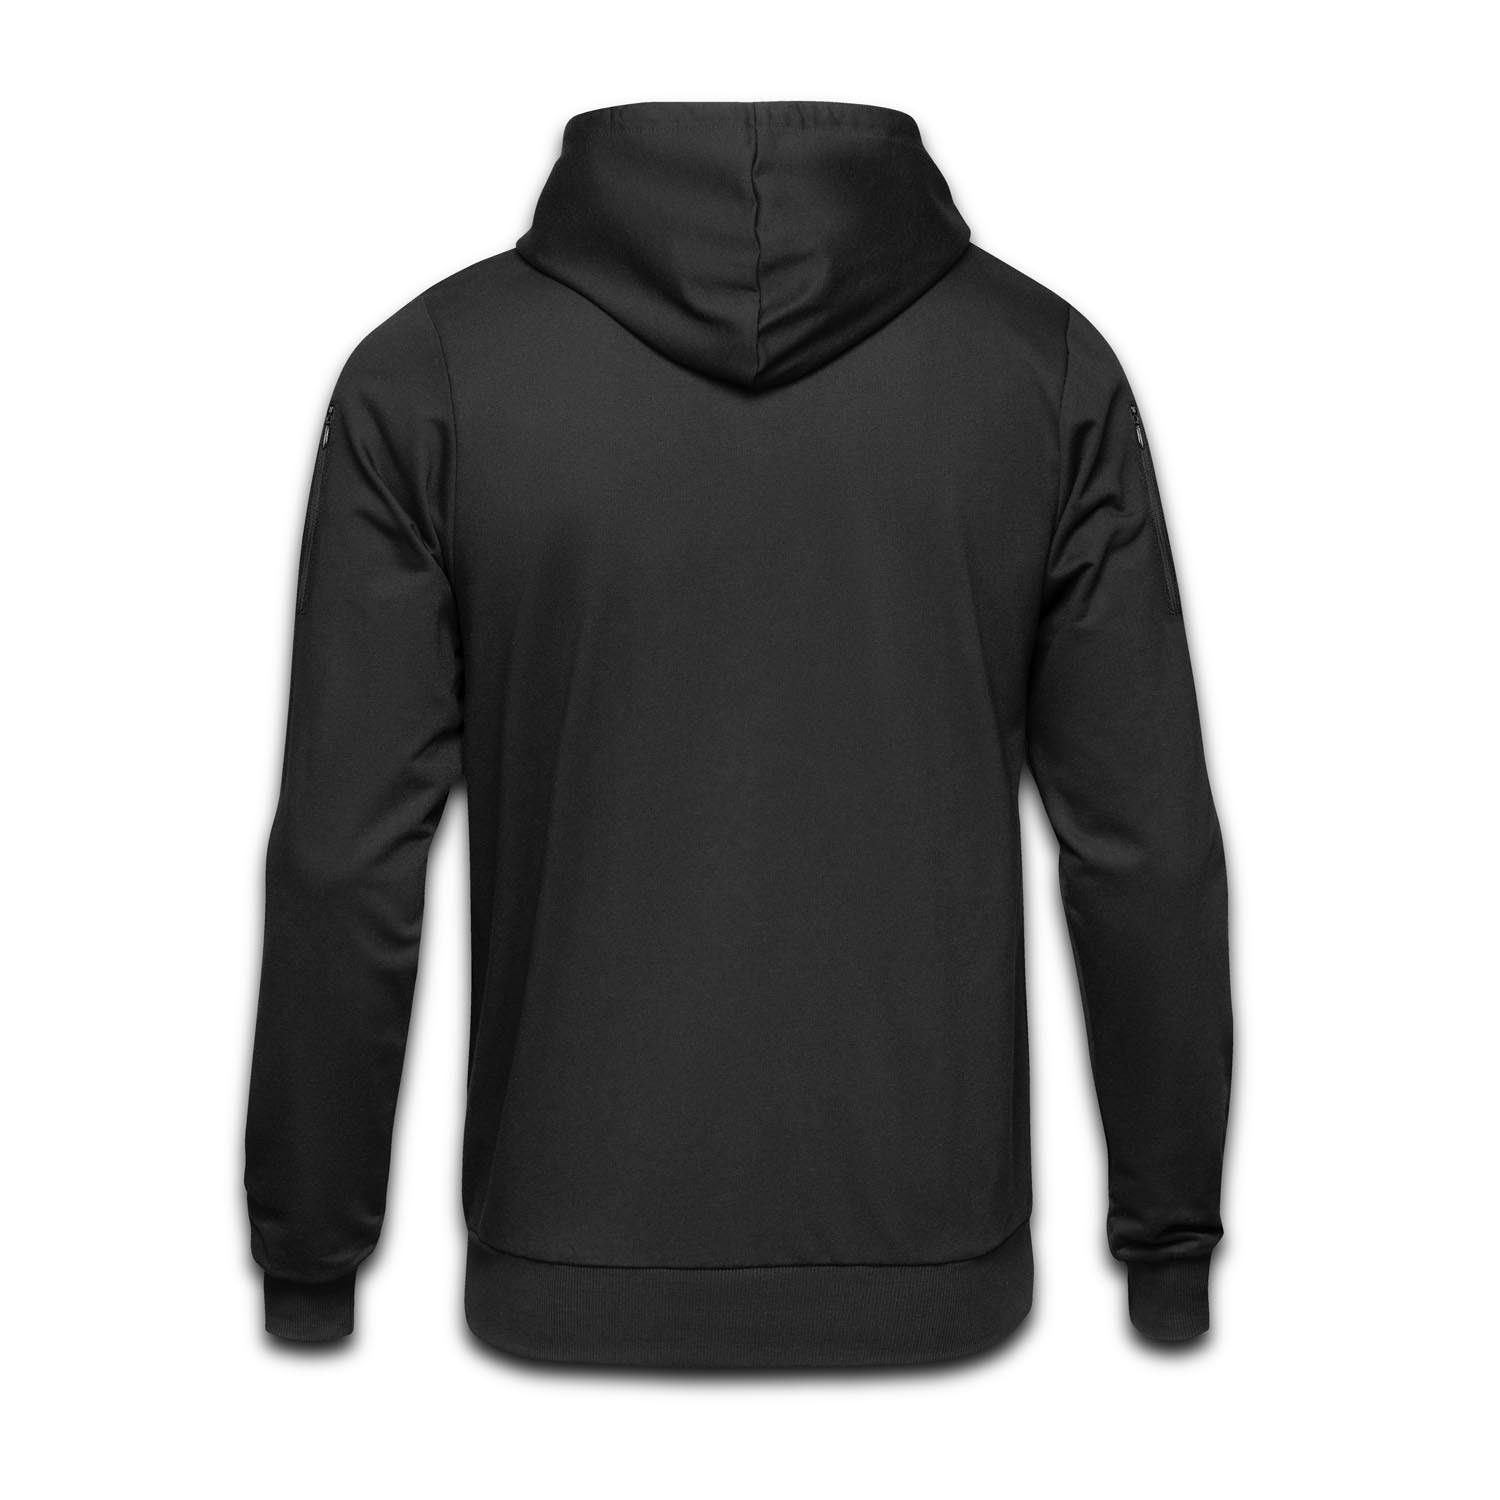 Concealed Carry Black Sweatshirt Hoodie with Kangaroo Pocket for